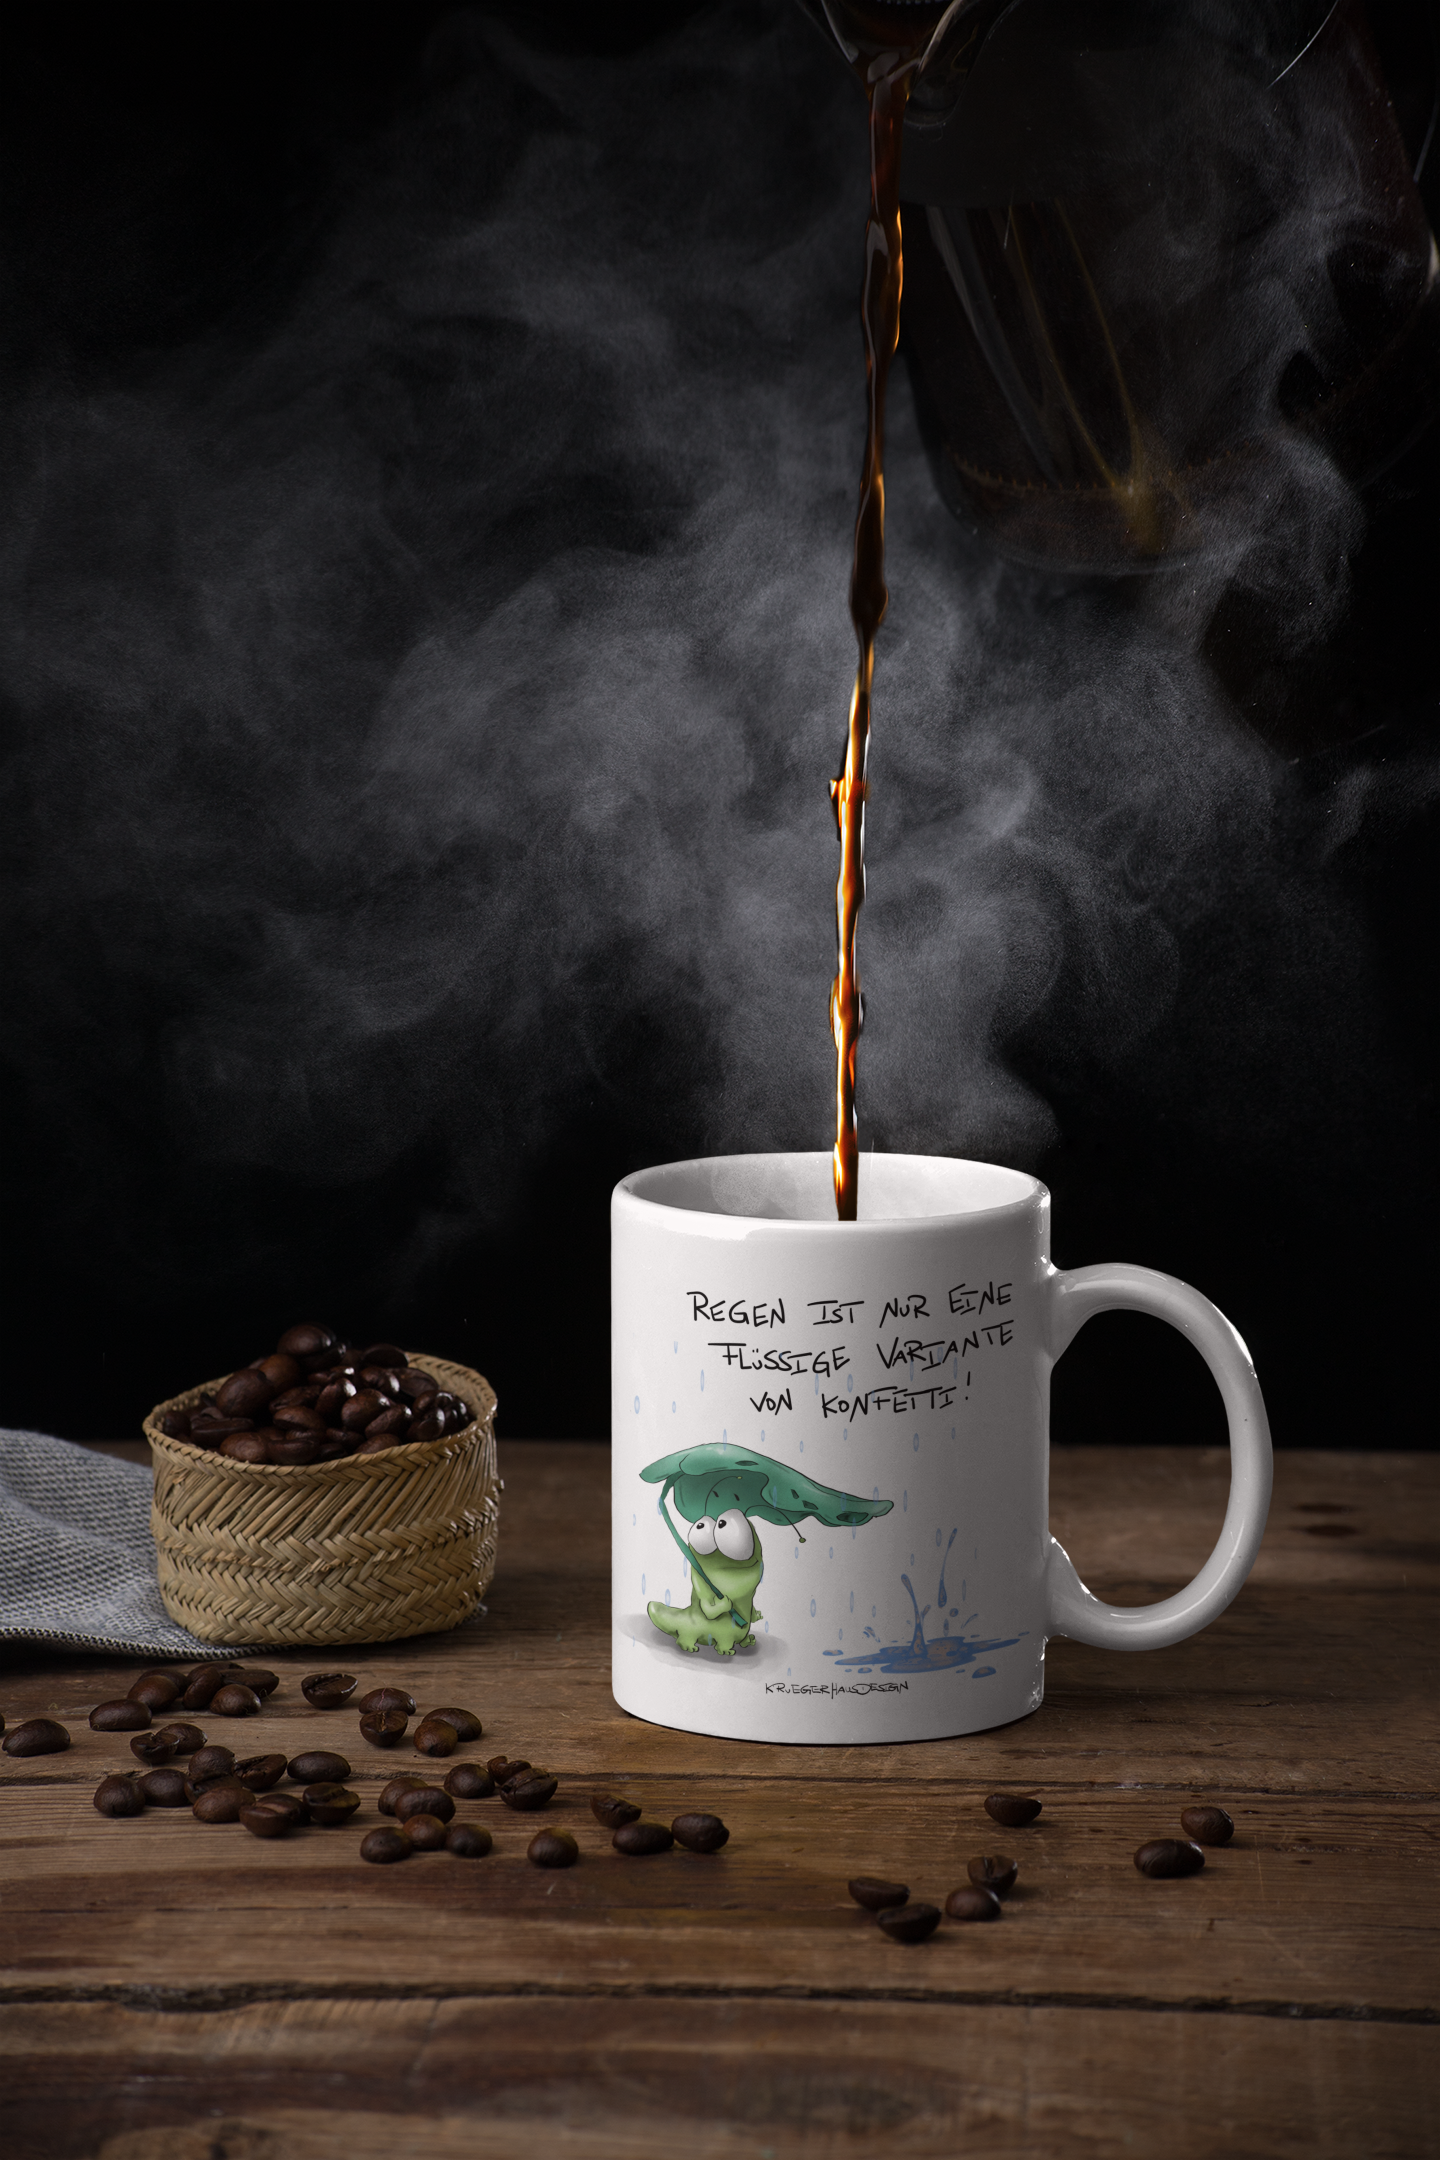 Tasse, Kaffeetasse Kruegerhausdesign Monster und Spruch "Regen ist nur eine flüssige..." Volldruck